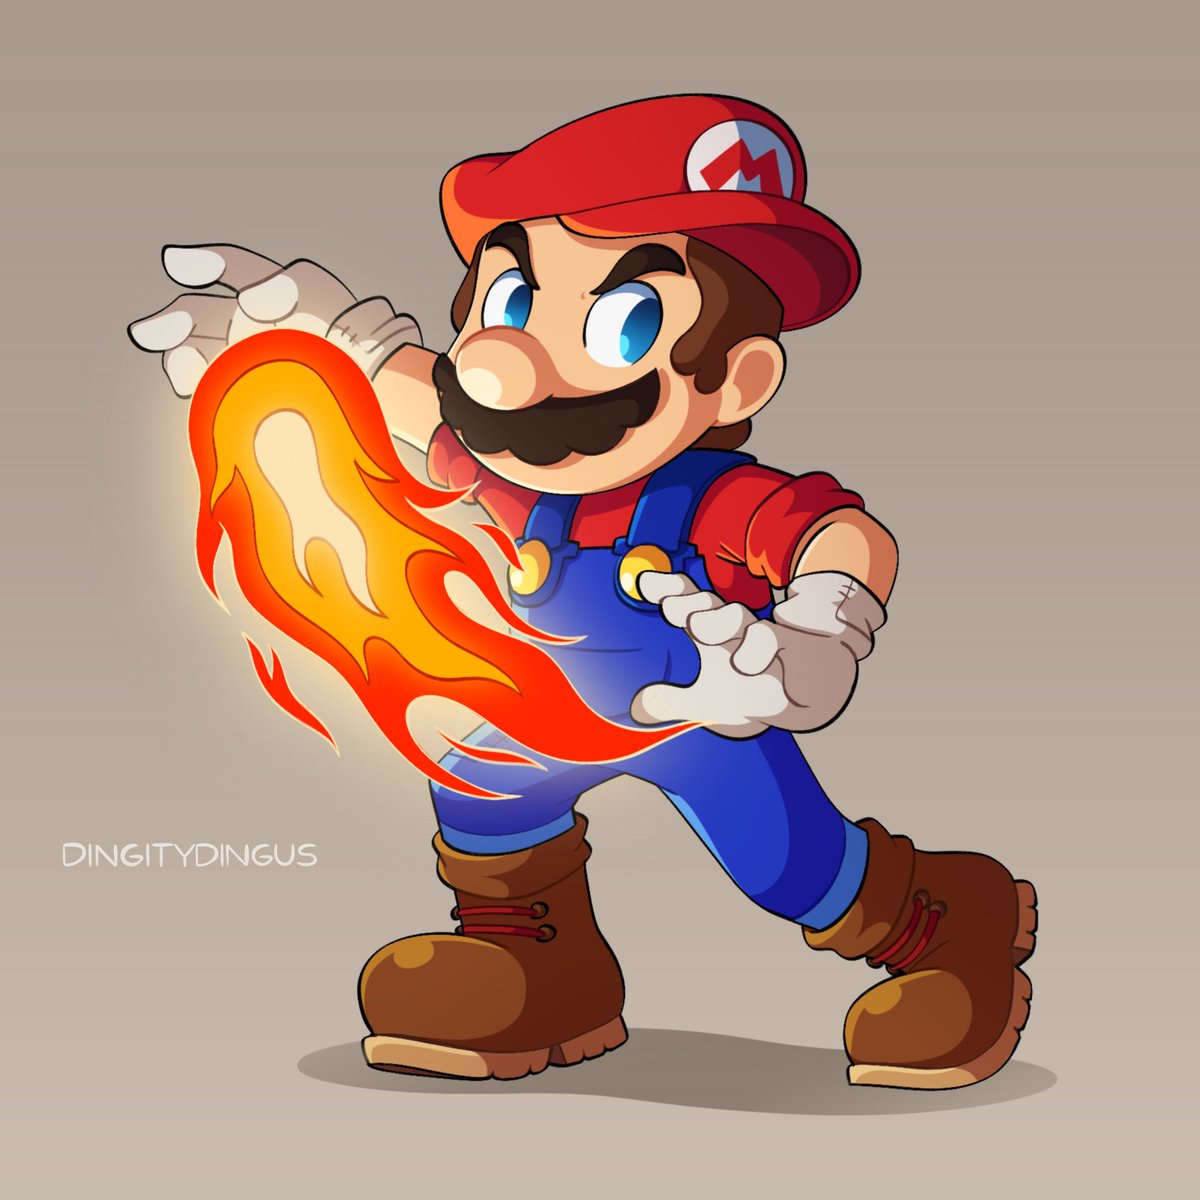 マリオ 「Mario! #Mario #Nintendo #OriginalArt 」|Vinny 🌟のイラスト